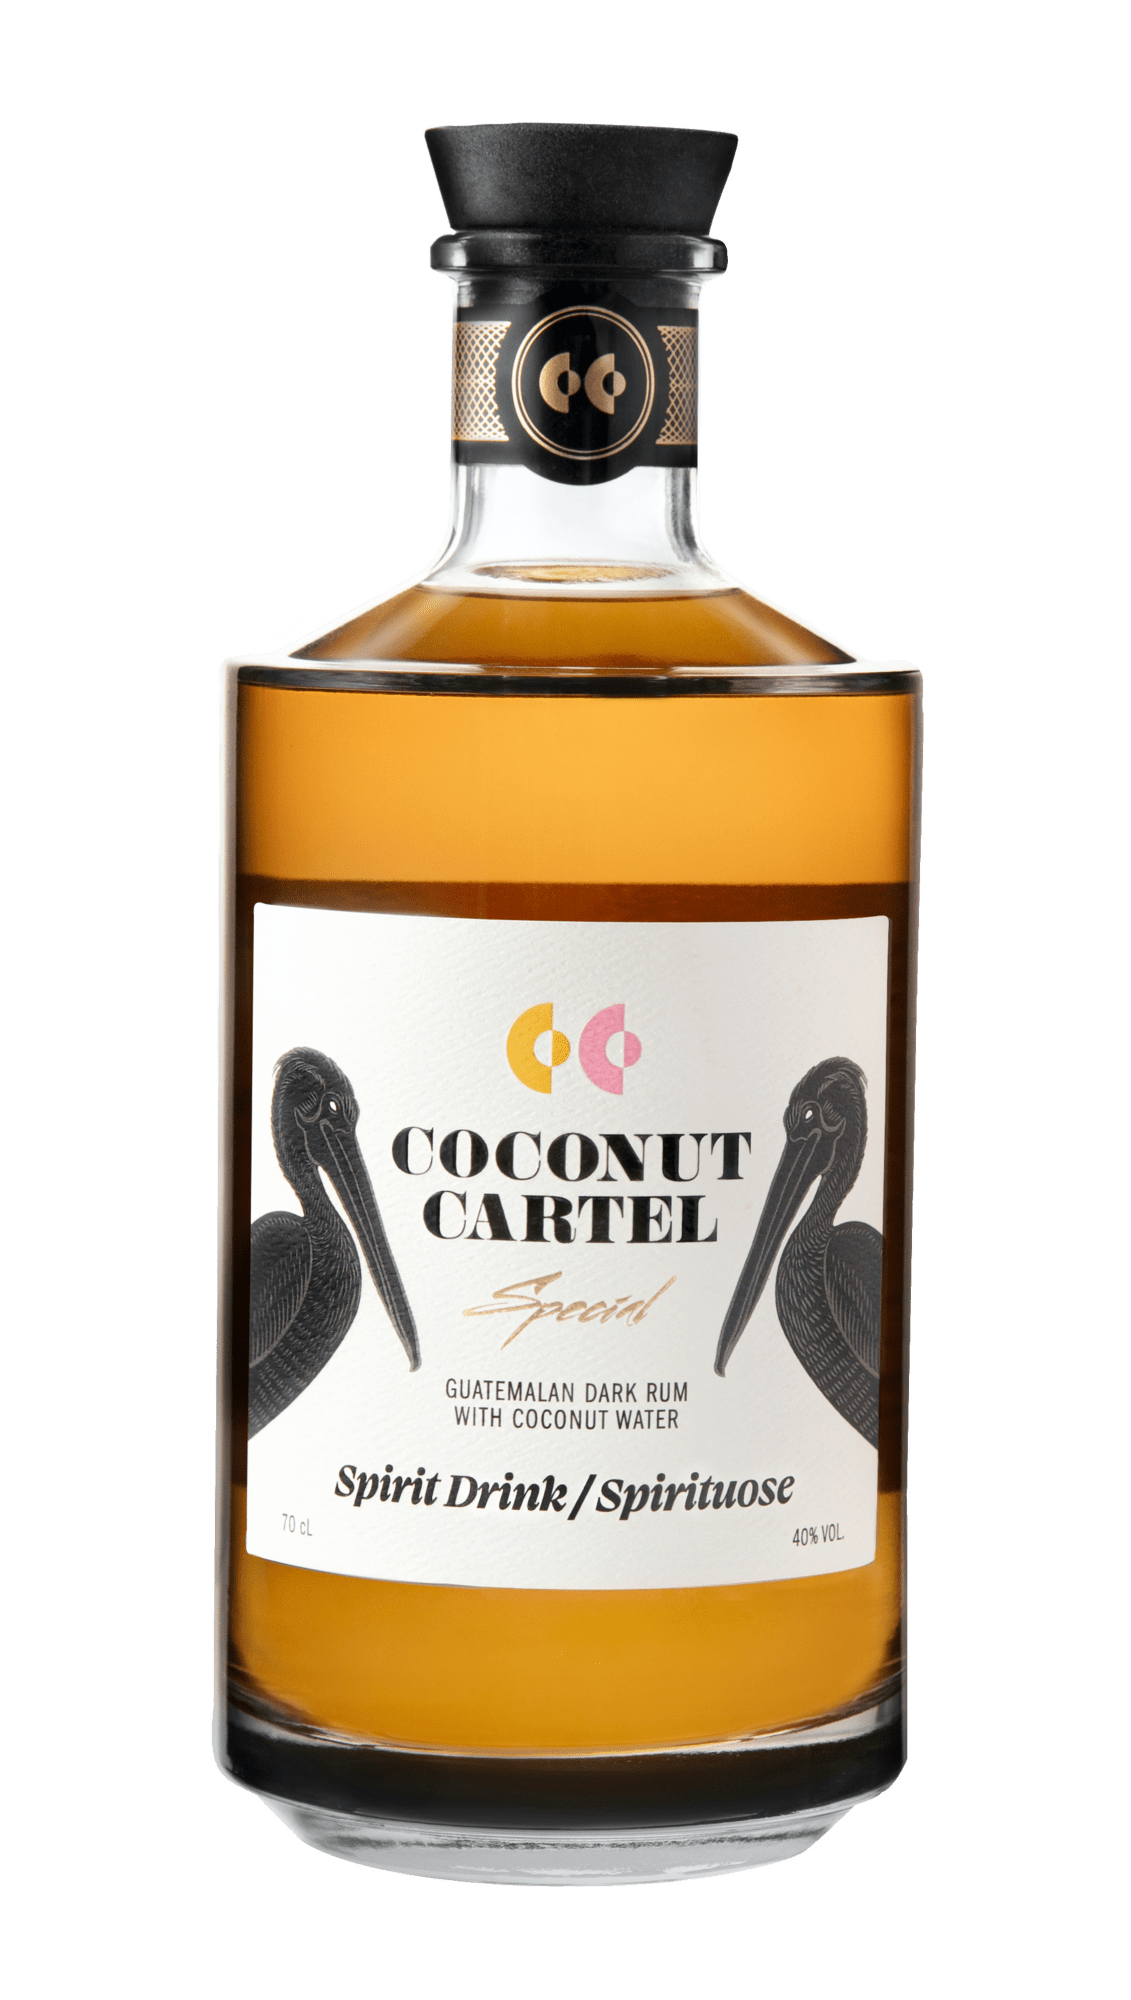 Coconut Cartel Special